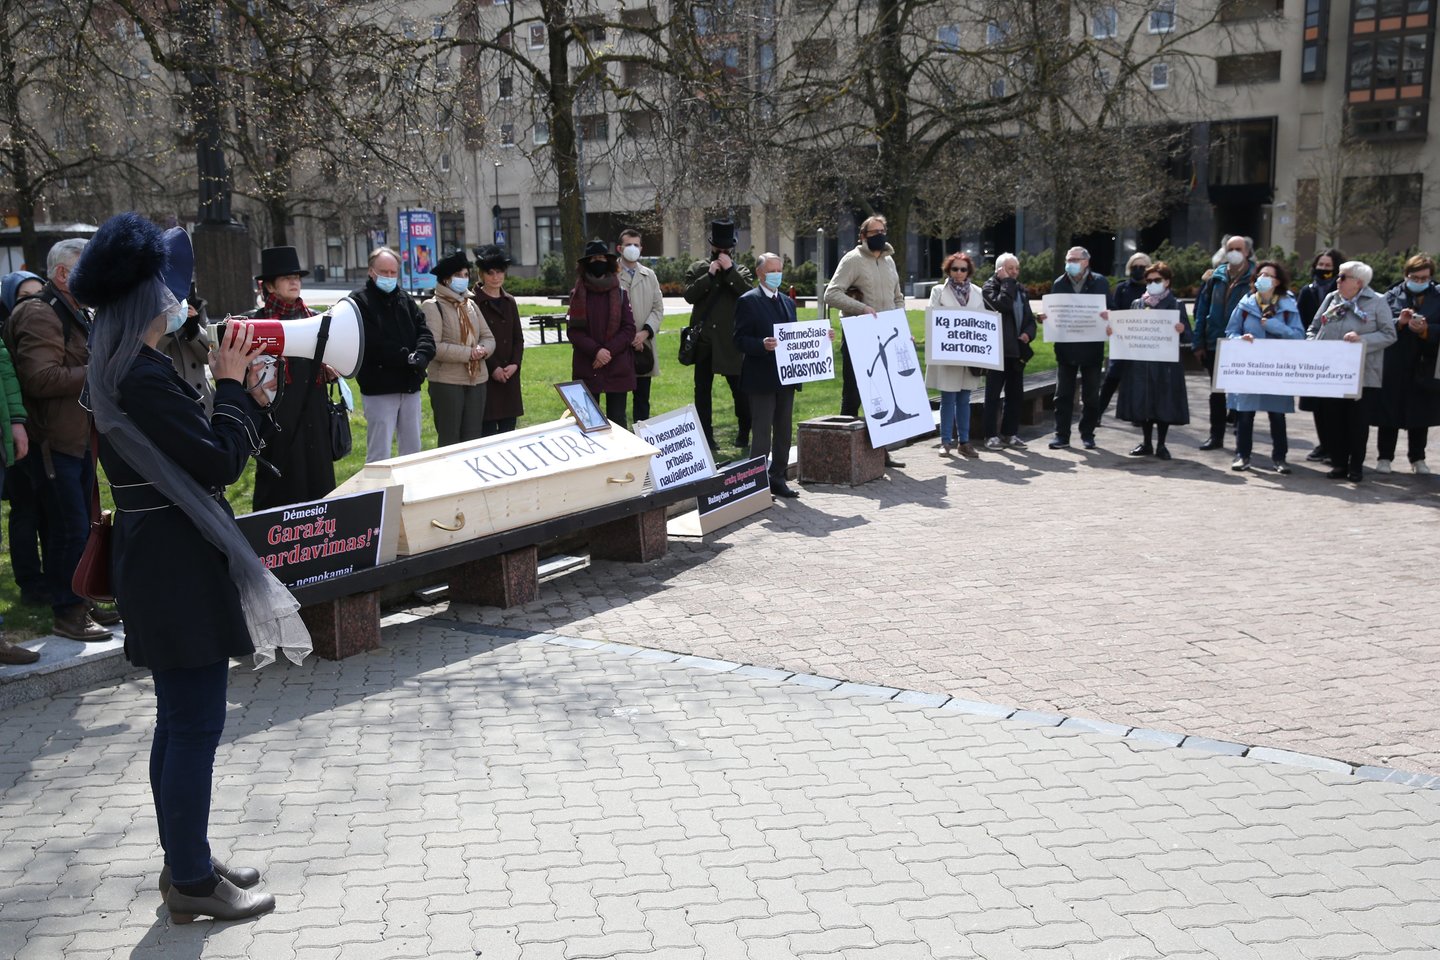 Nepriklausomybės aikštėje prie Seimo vyko paveldo laidotuvės su varžytynių elementais – protesto akcija.<br>R.Danisevičiaus nuotr.